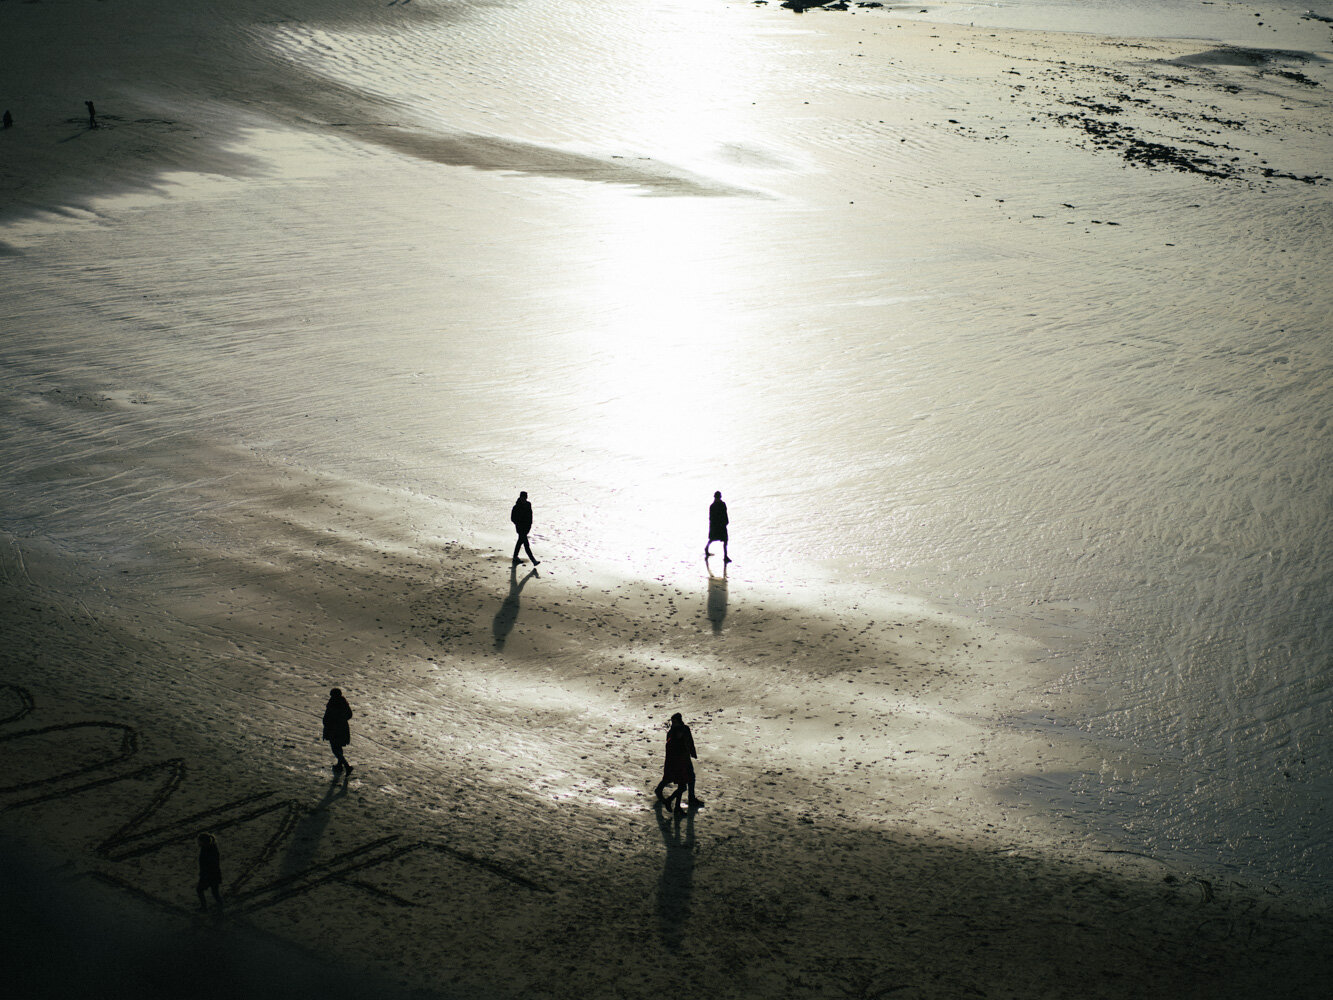  Marcheurs sur la plage. Saint Malo, France. Décembre 2019 // Walkers on the beach. Saint Malo, France. December 2019. 